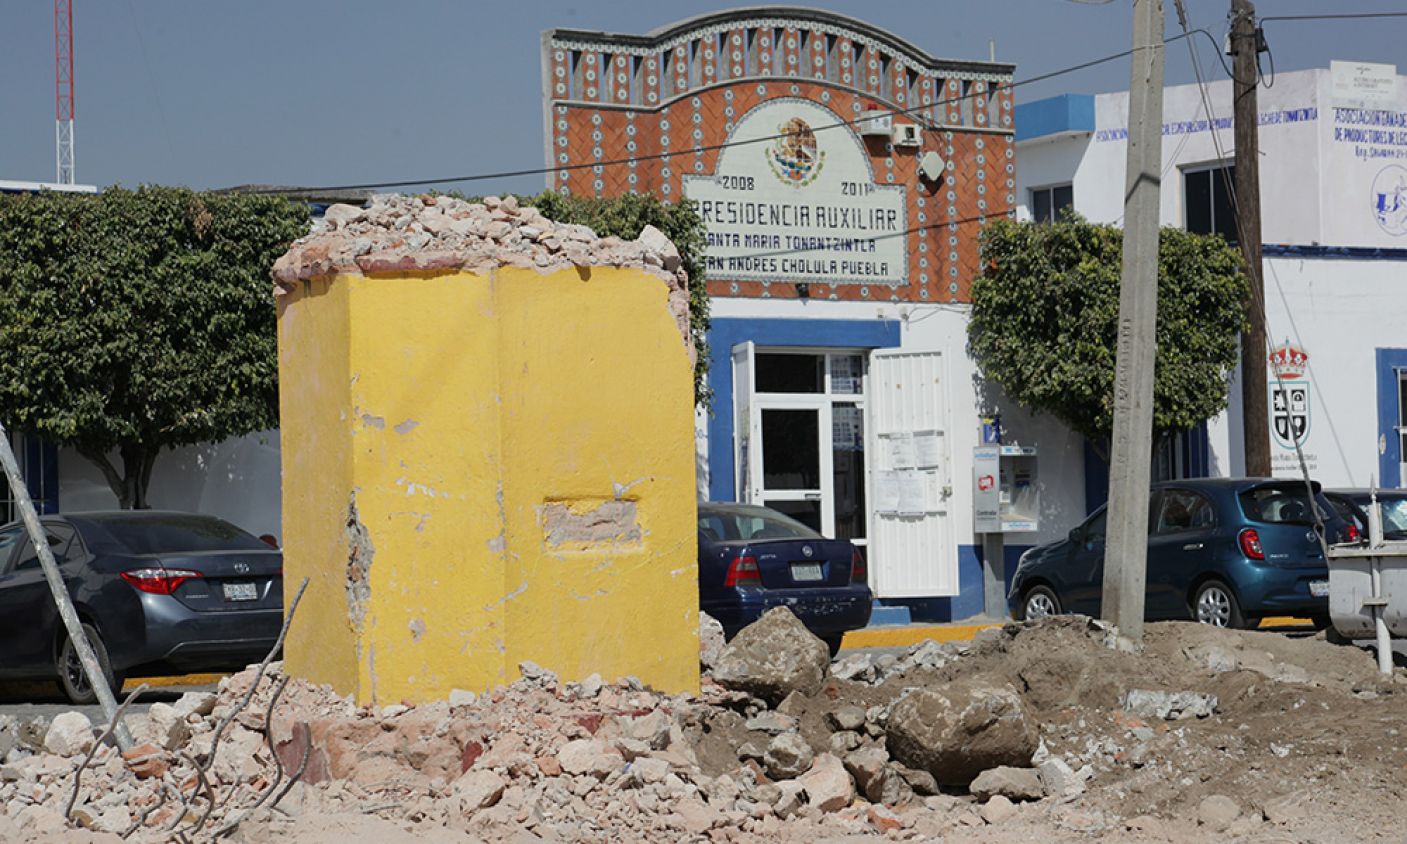 Obras de rehabilitación de la plaza de Santa María Tonantzintla son paradas por el INAH